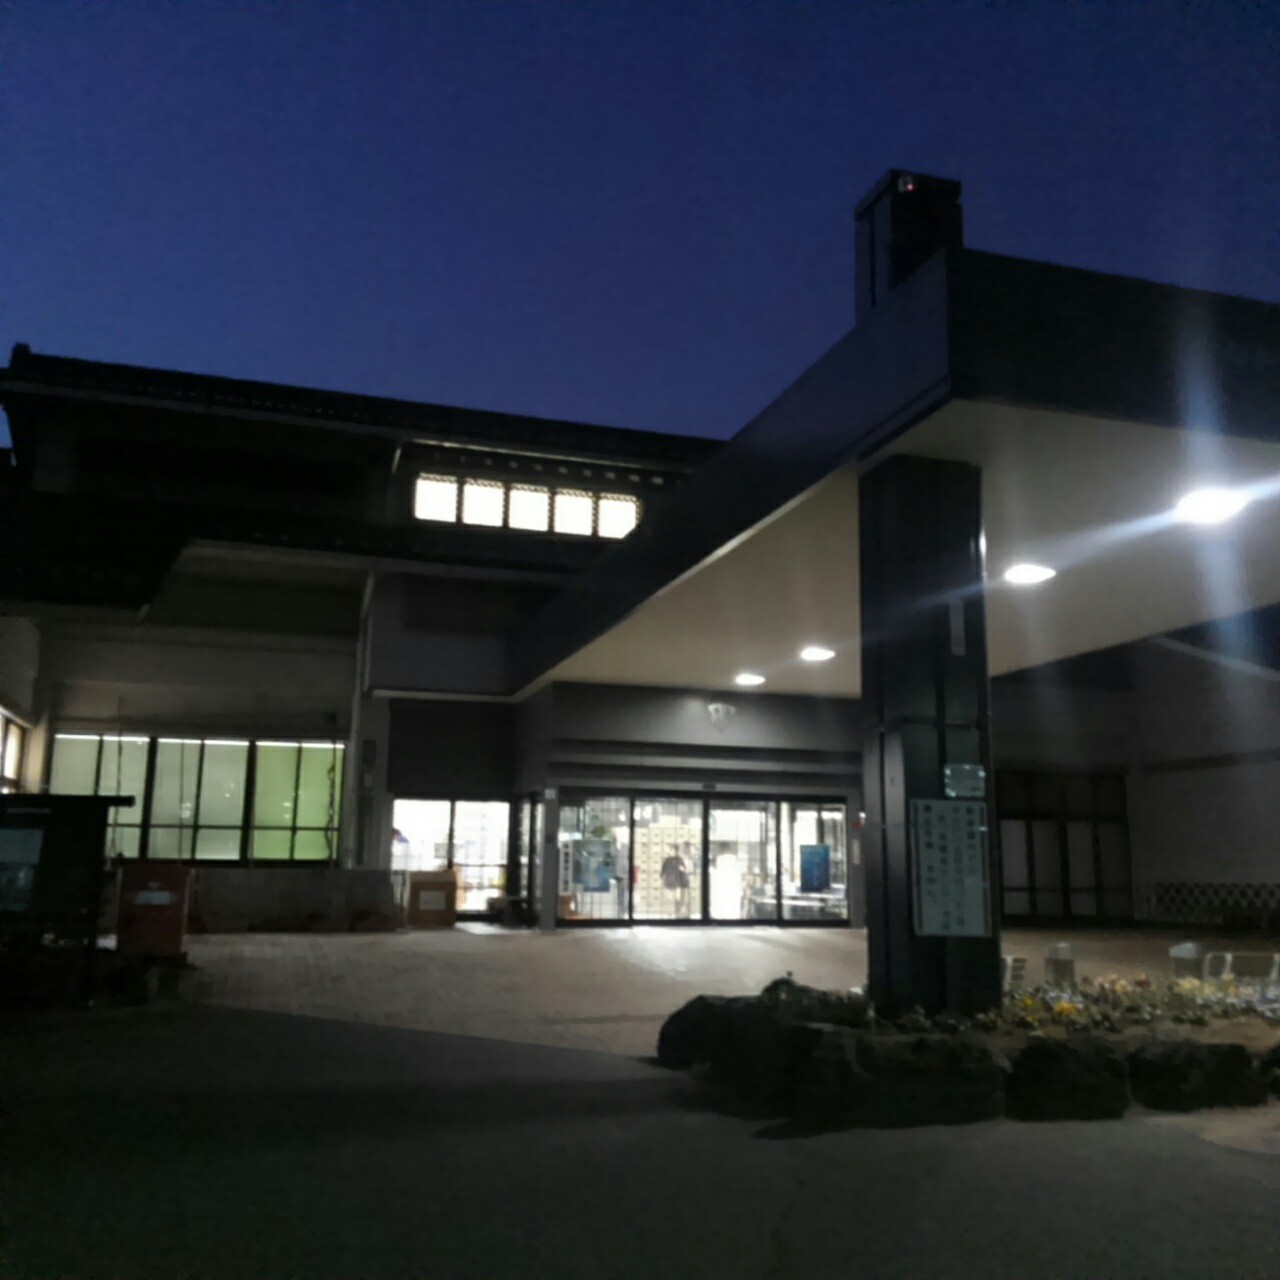 昭和村総合福祉センター昭和の湯